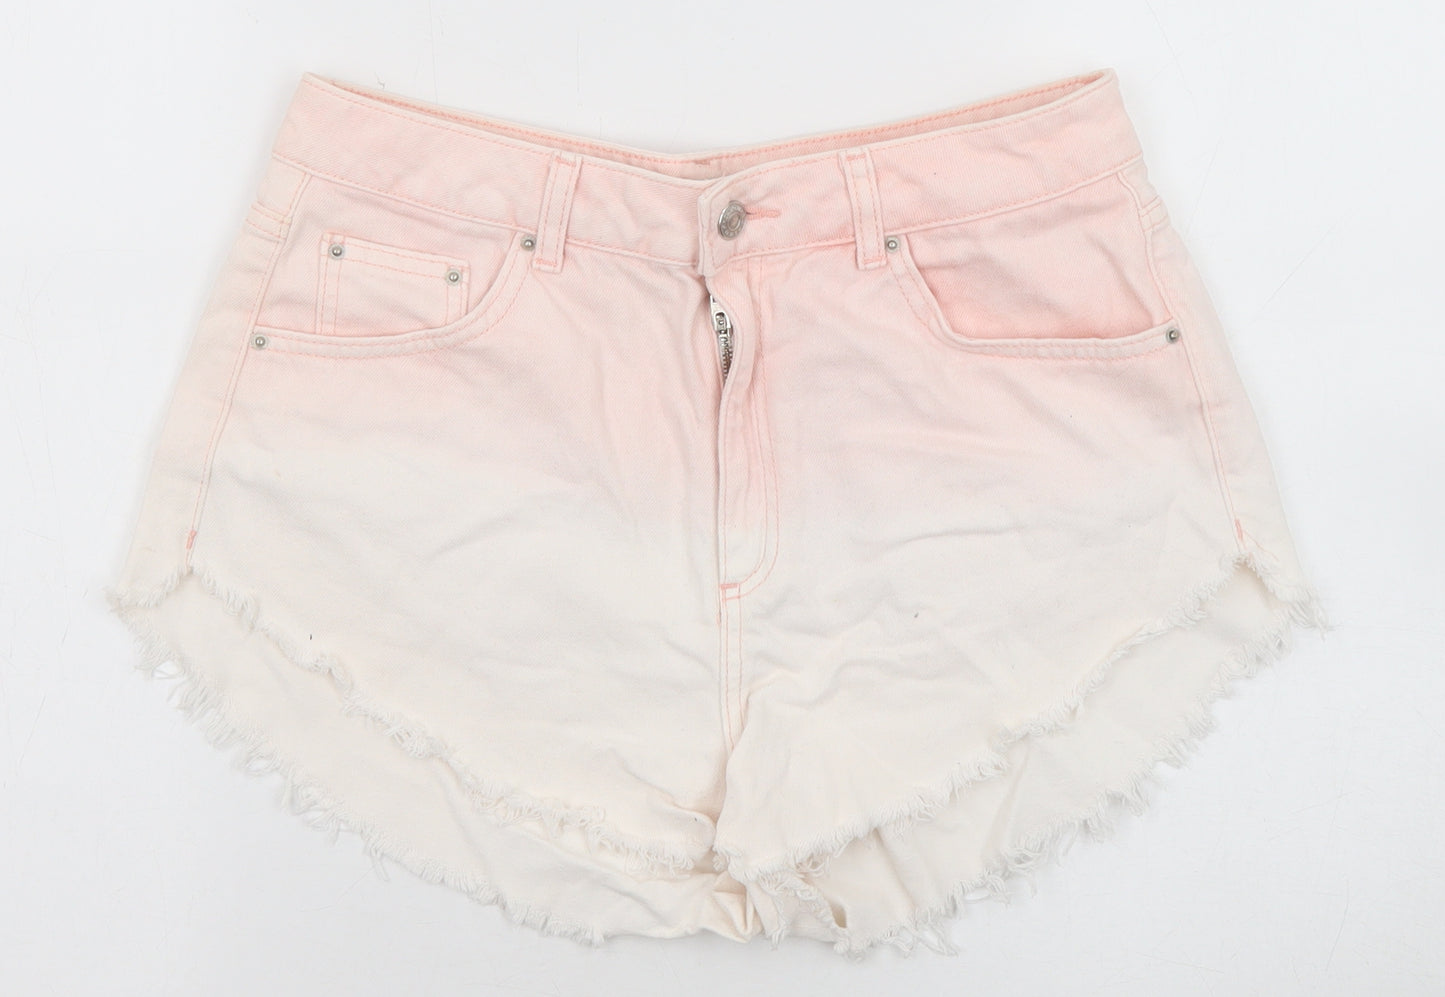 Topshop Womens Pink Cotton Cut-Off Shorts Size 12 Regular Zip